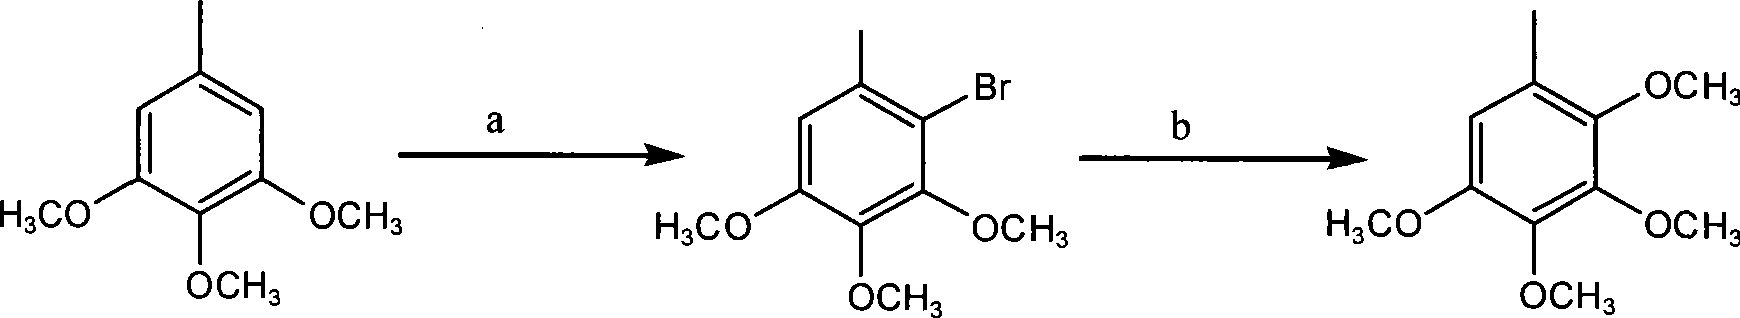 Method for preparing 2,3,4,5-tetramethoxytoluene